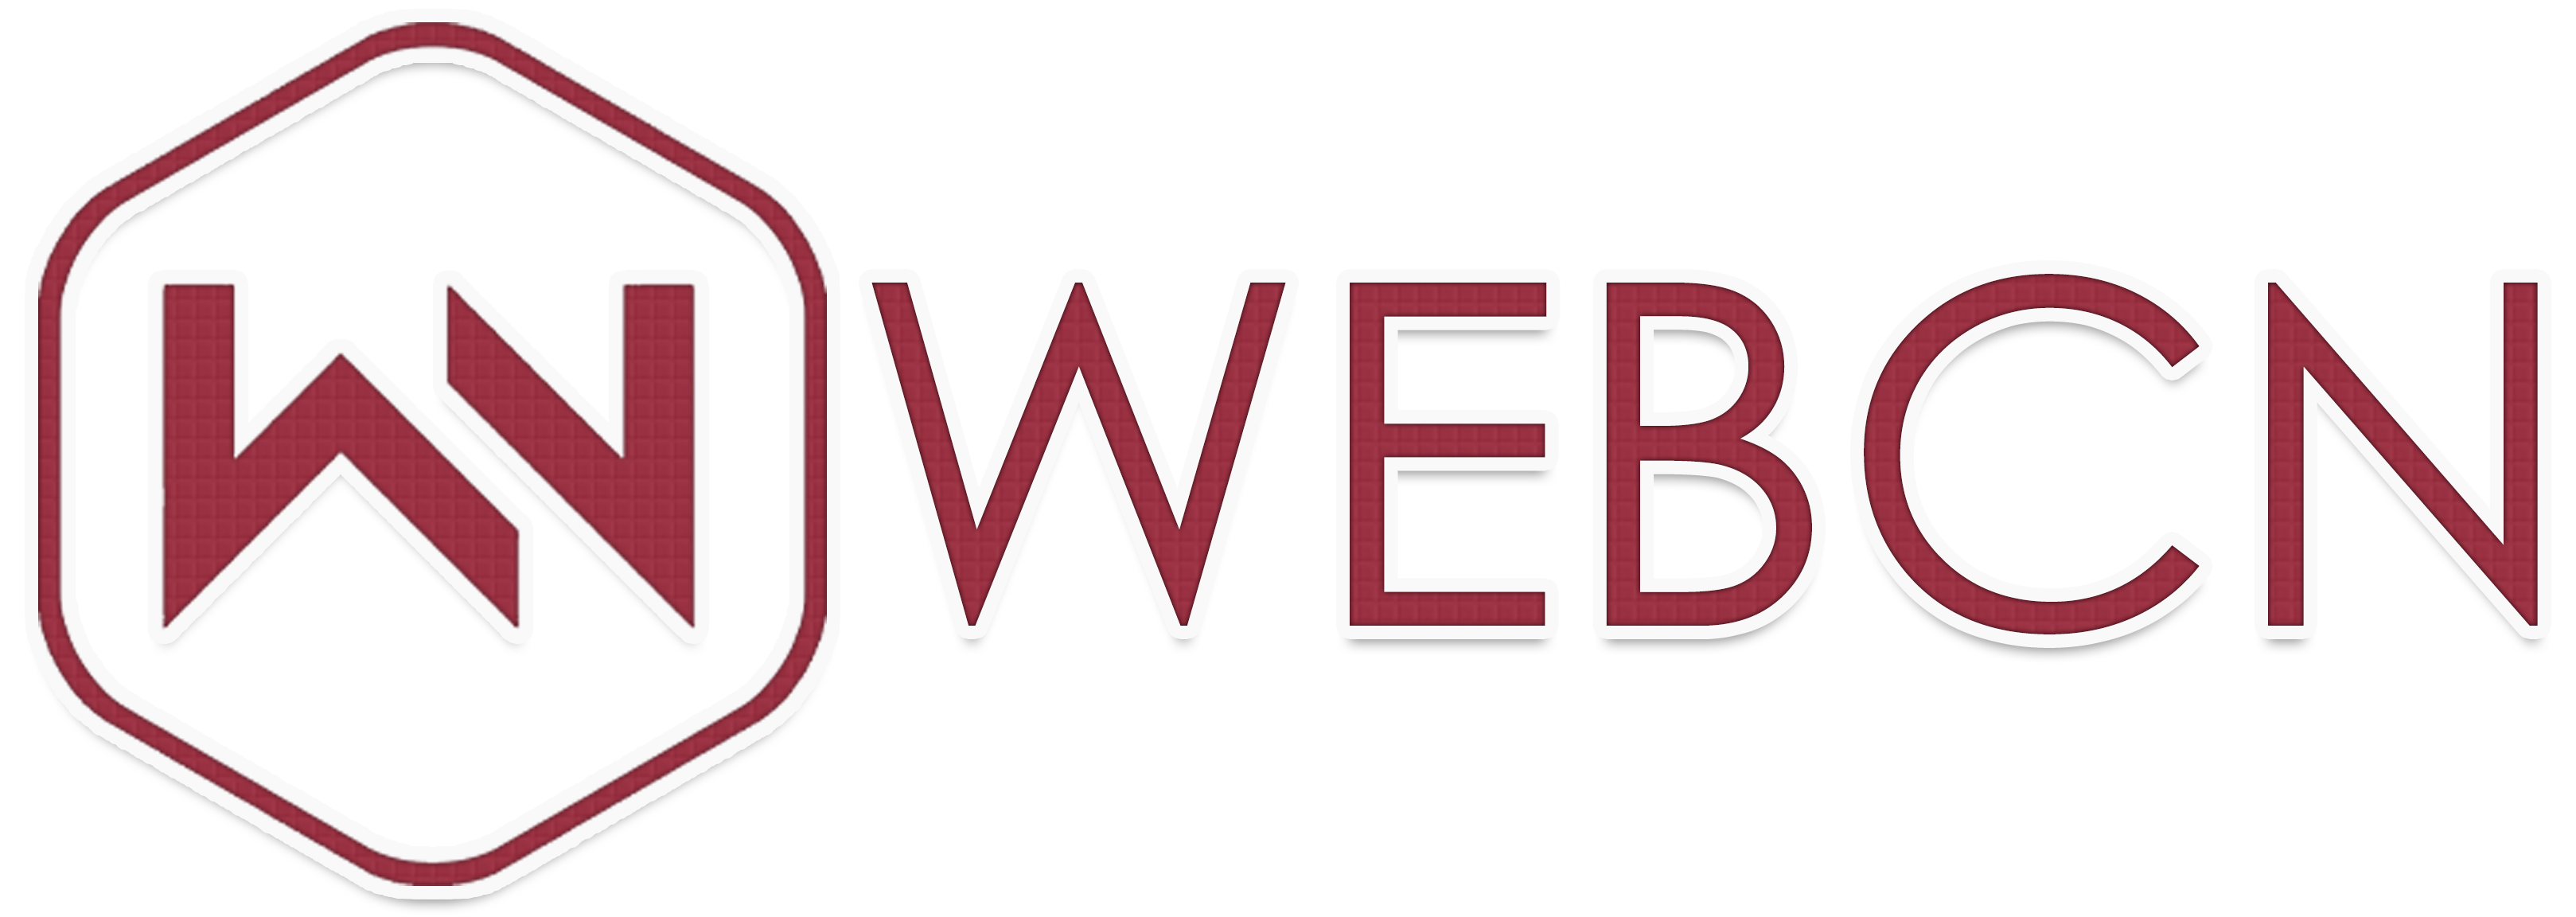 Студия веб-дизайна и поискового продвижения сайтов "WEBCN"